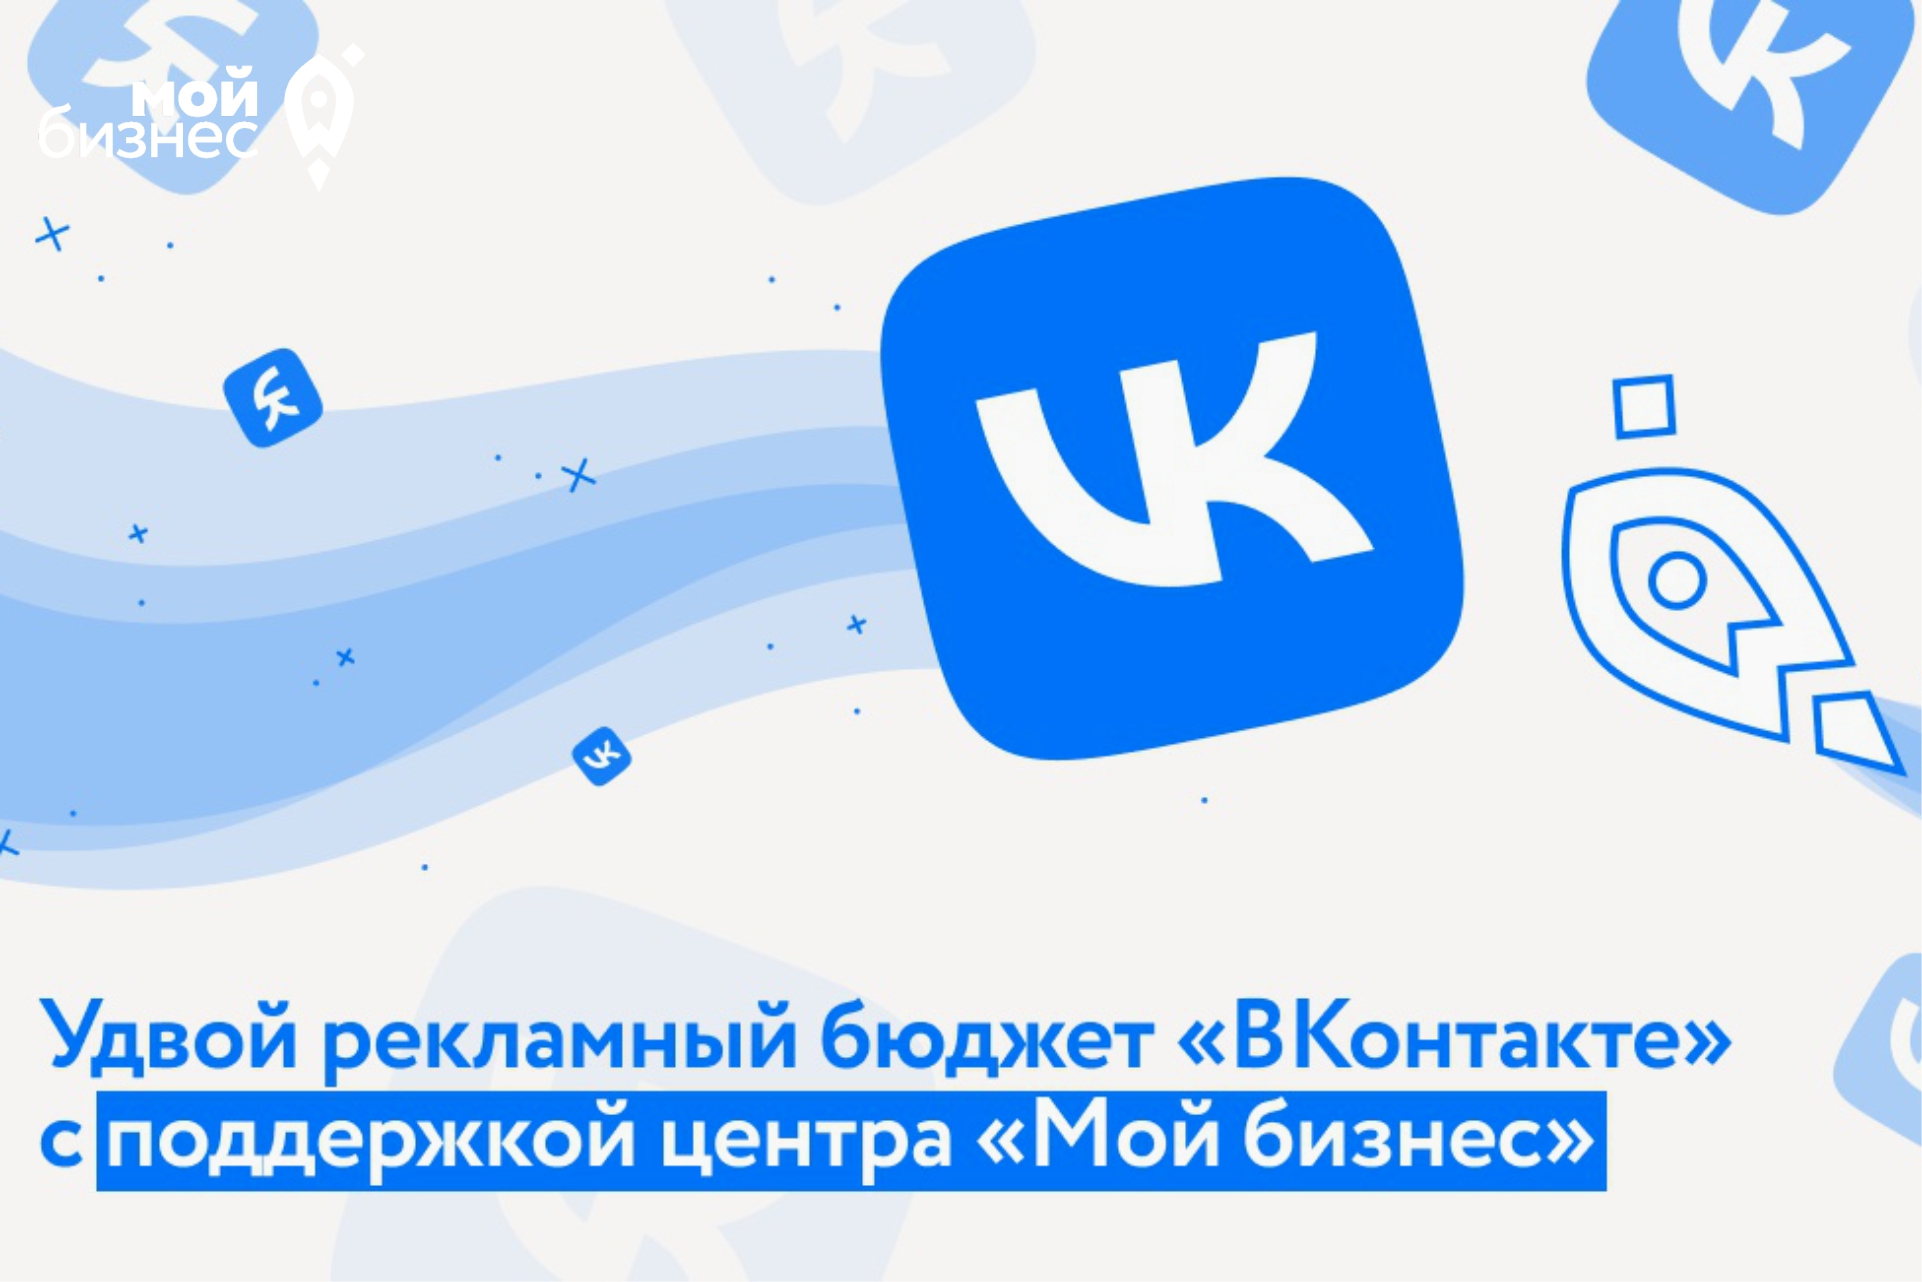 Волгоградским предпринимателям доступна программа поддержки от Минэкономразвития РФ и VK